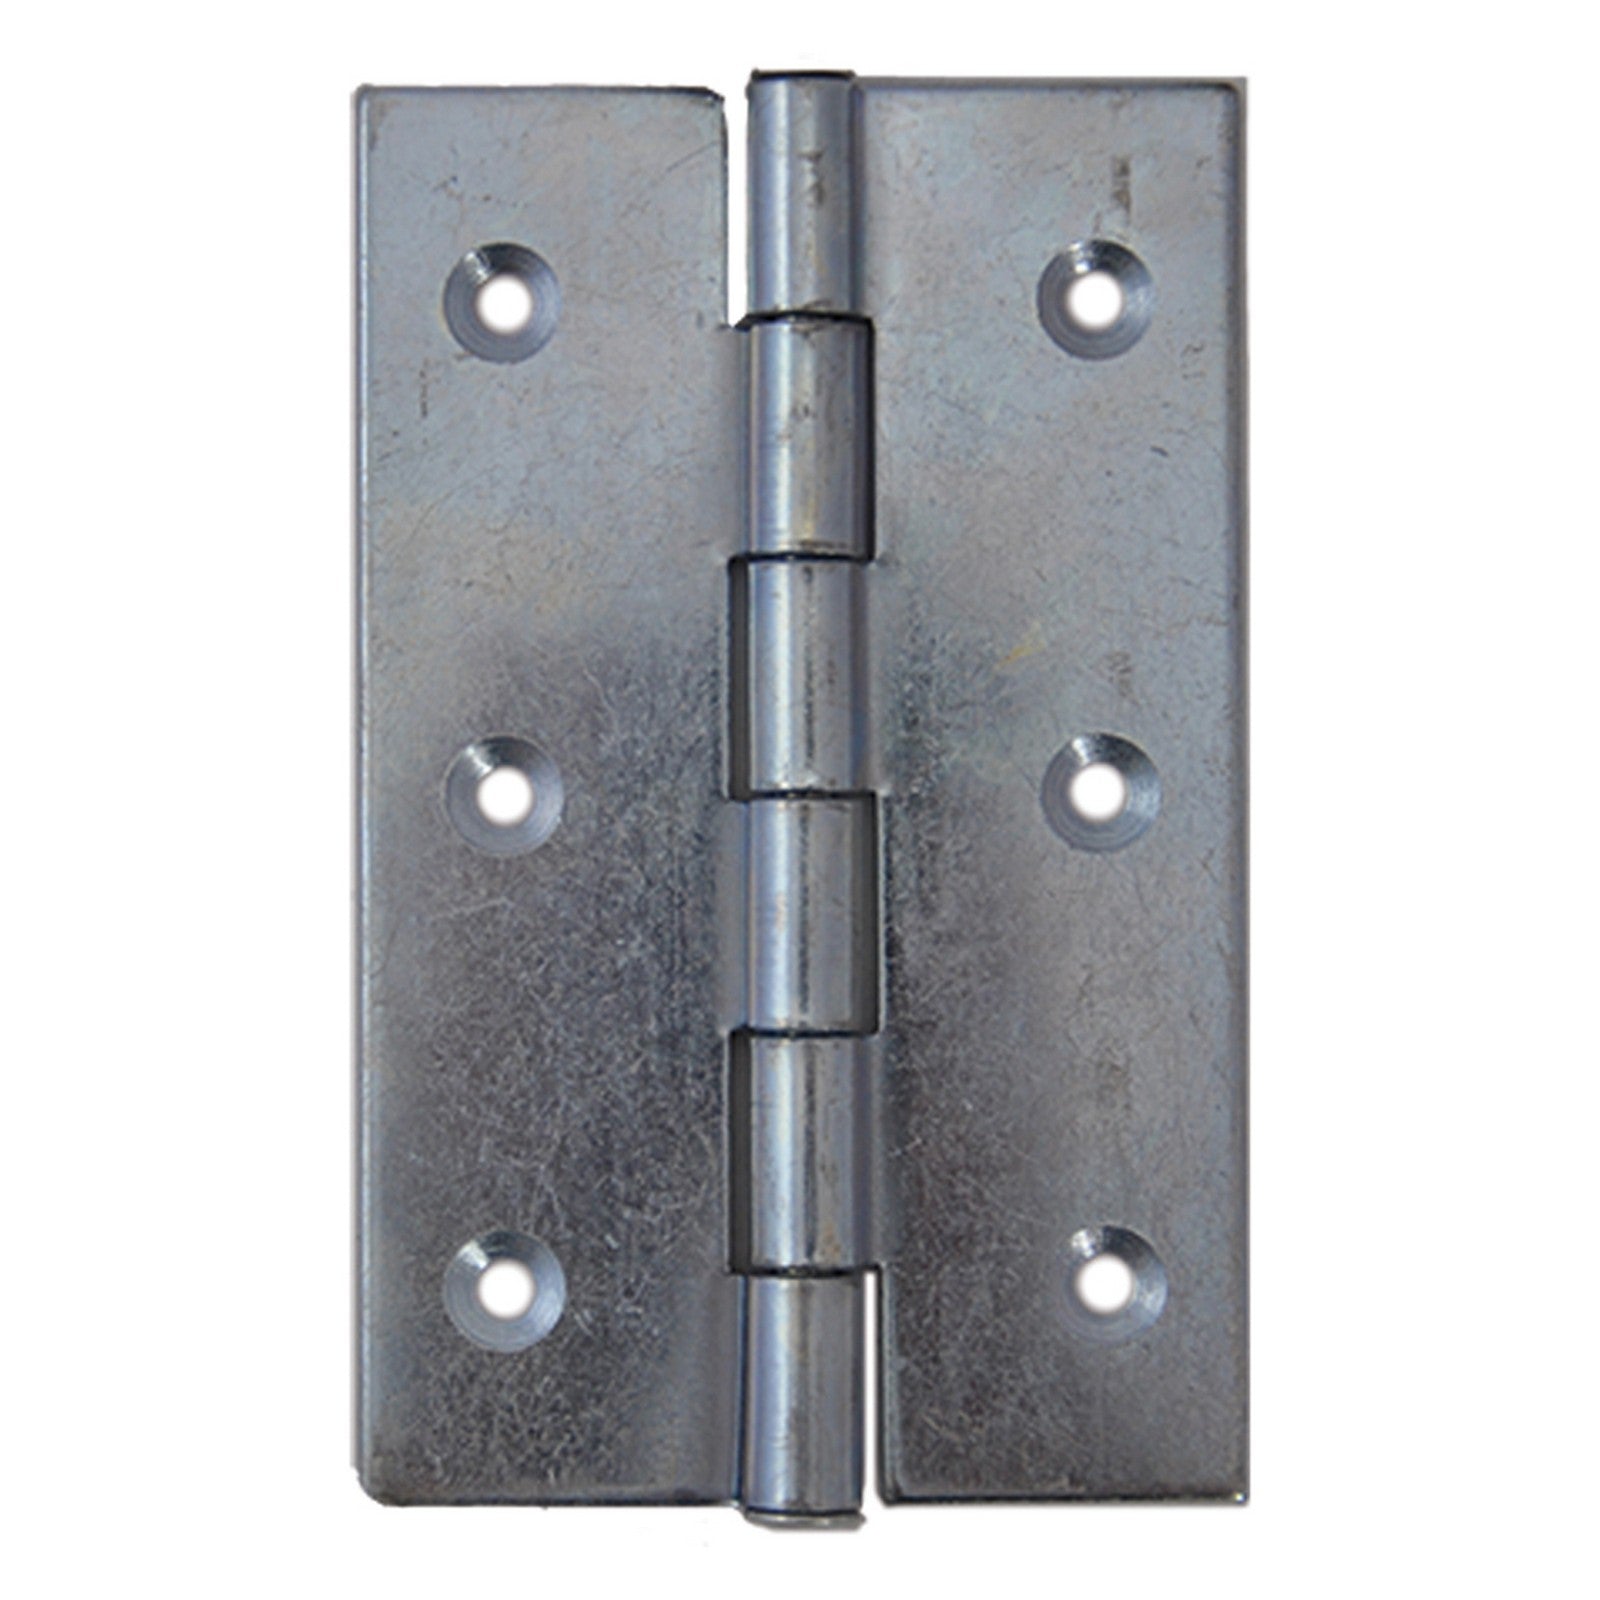 1blister cerniera acciaio zincato art.840 mm 75 x 50 - 4 pezzi cod:ferx.38232nlm